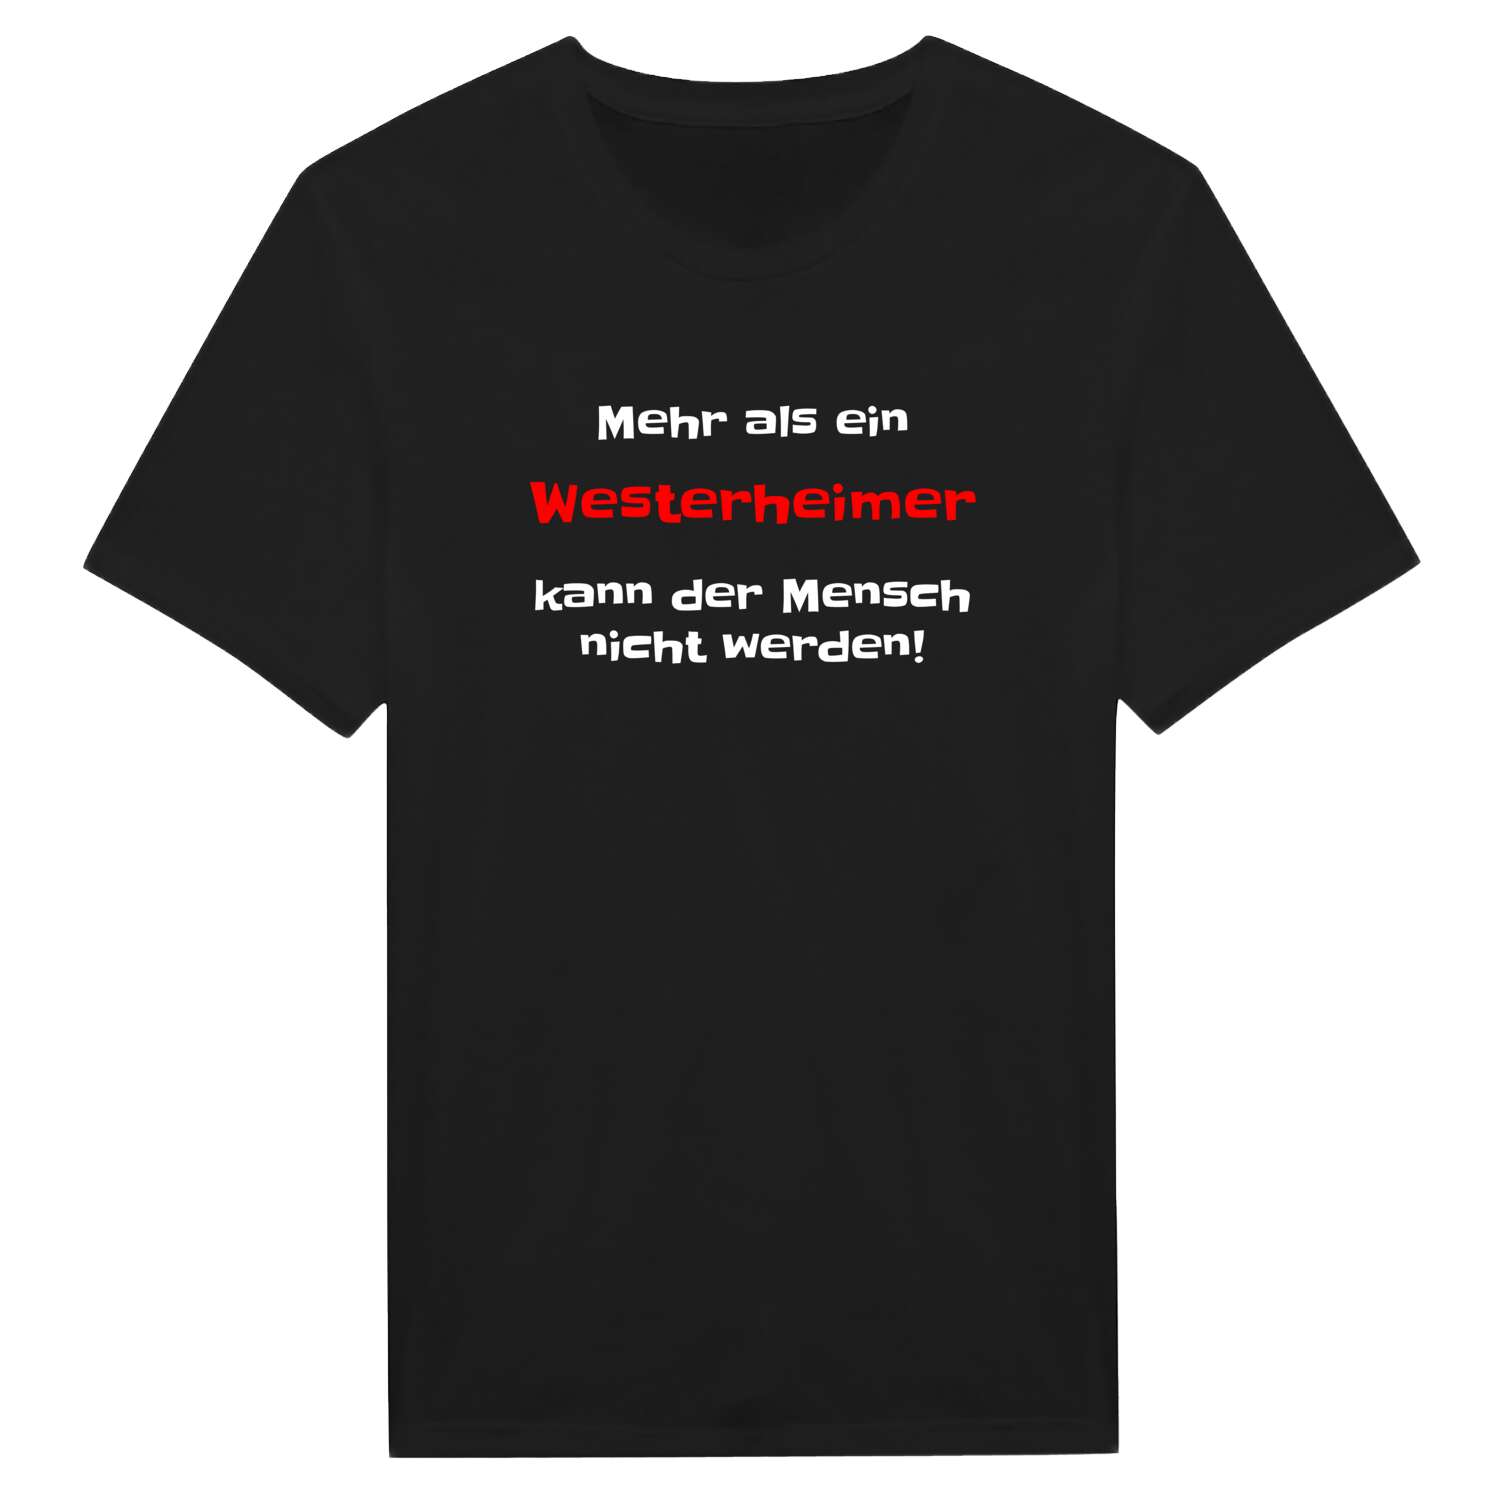 Westerheim T-Shirt »Mehr als ein«